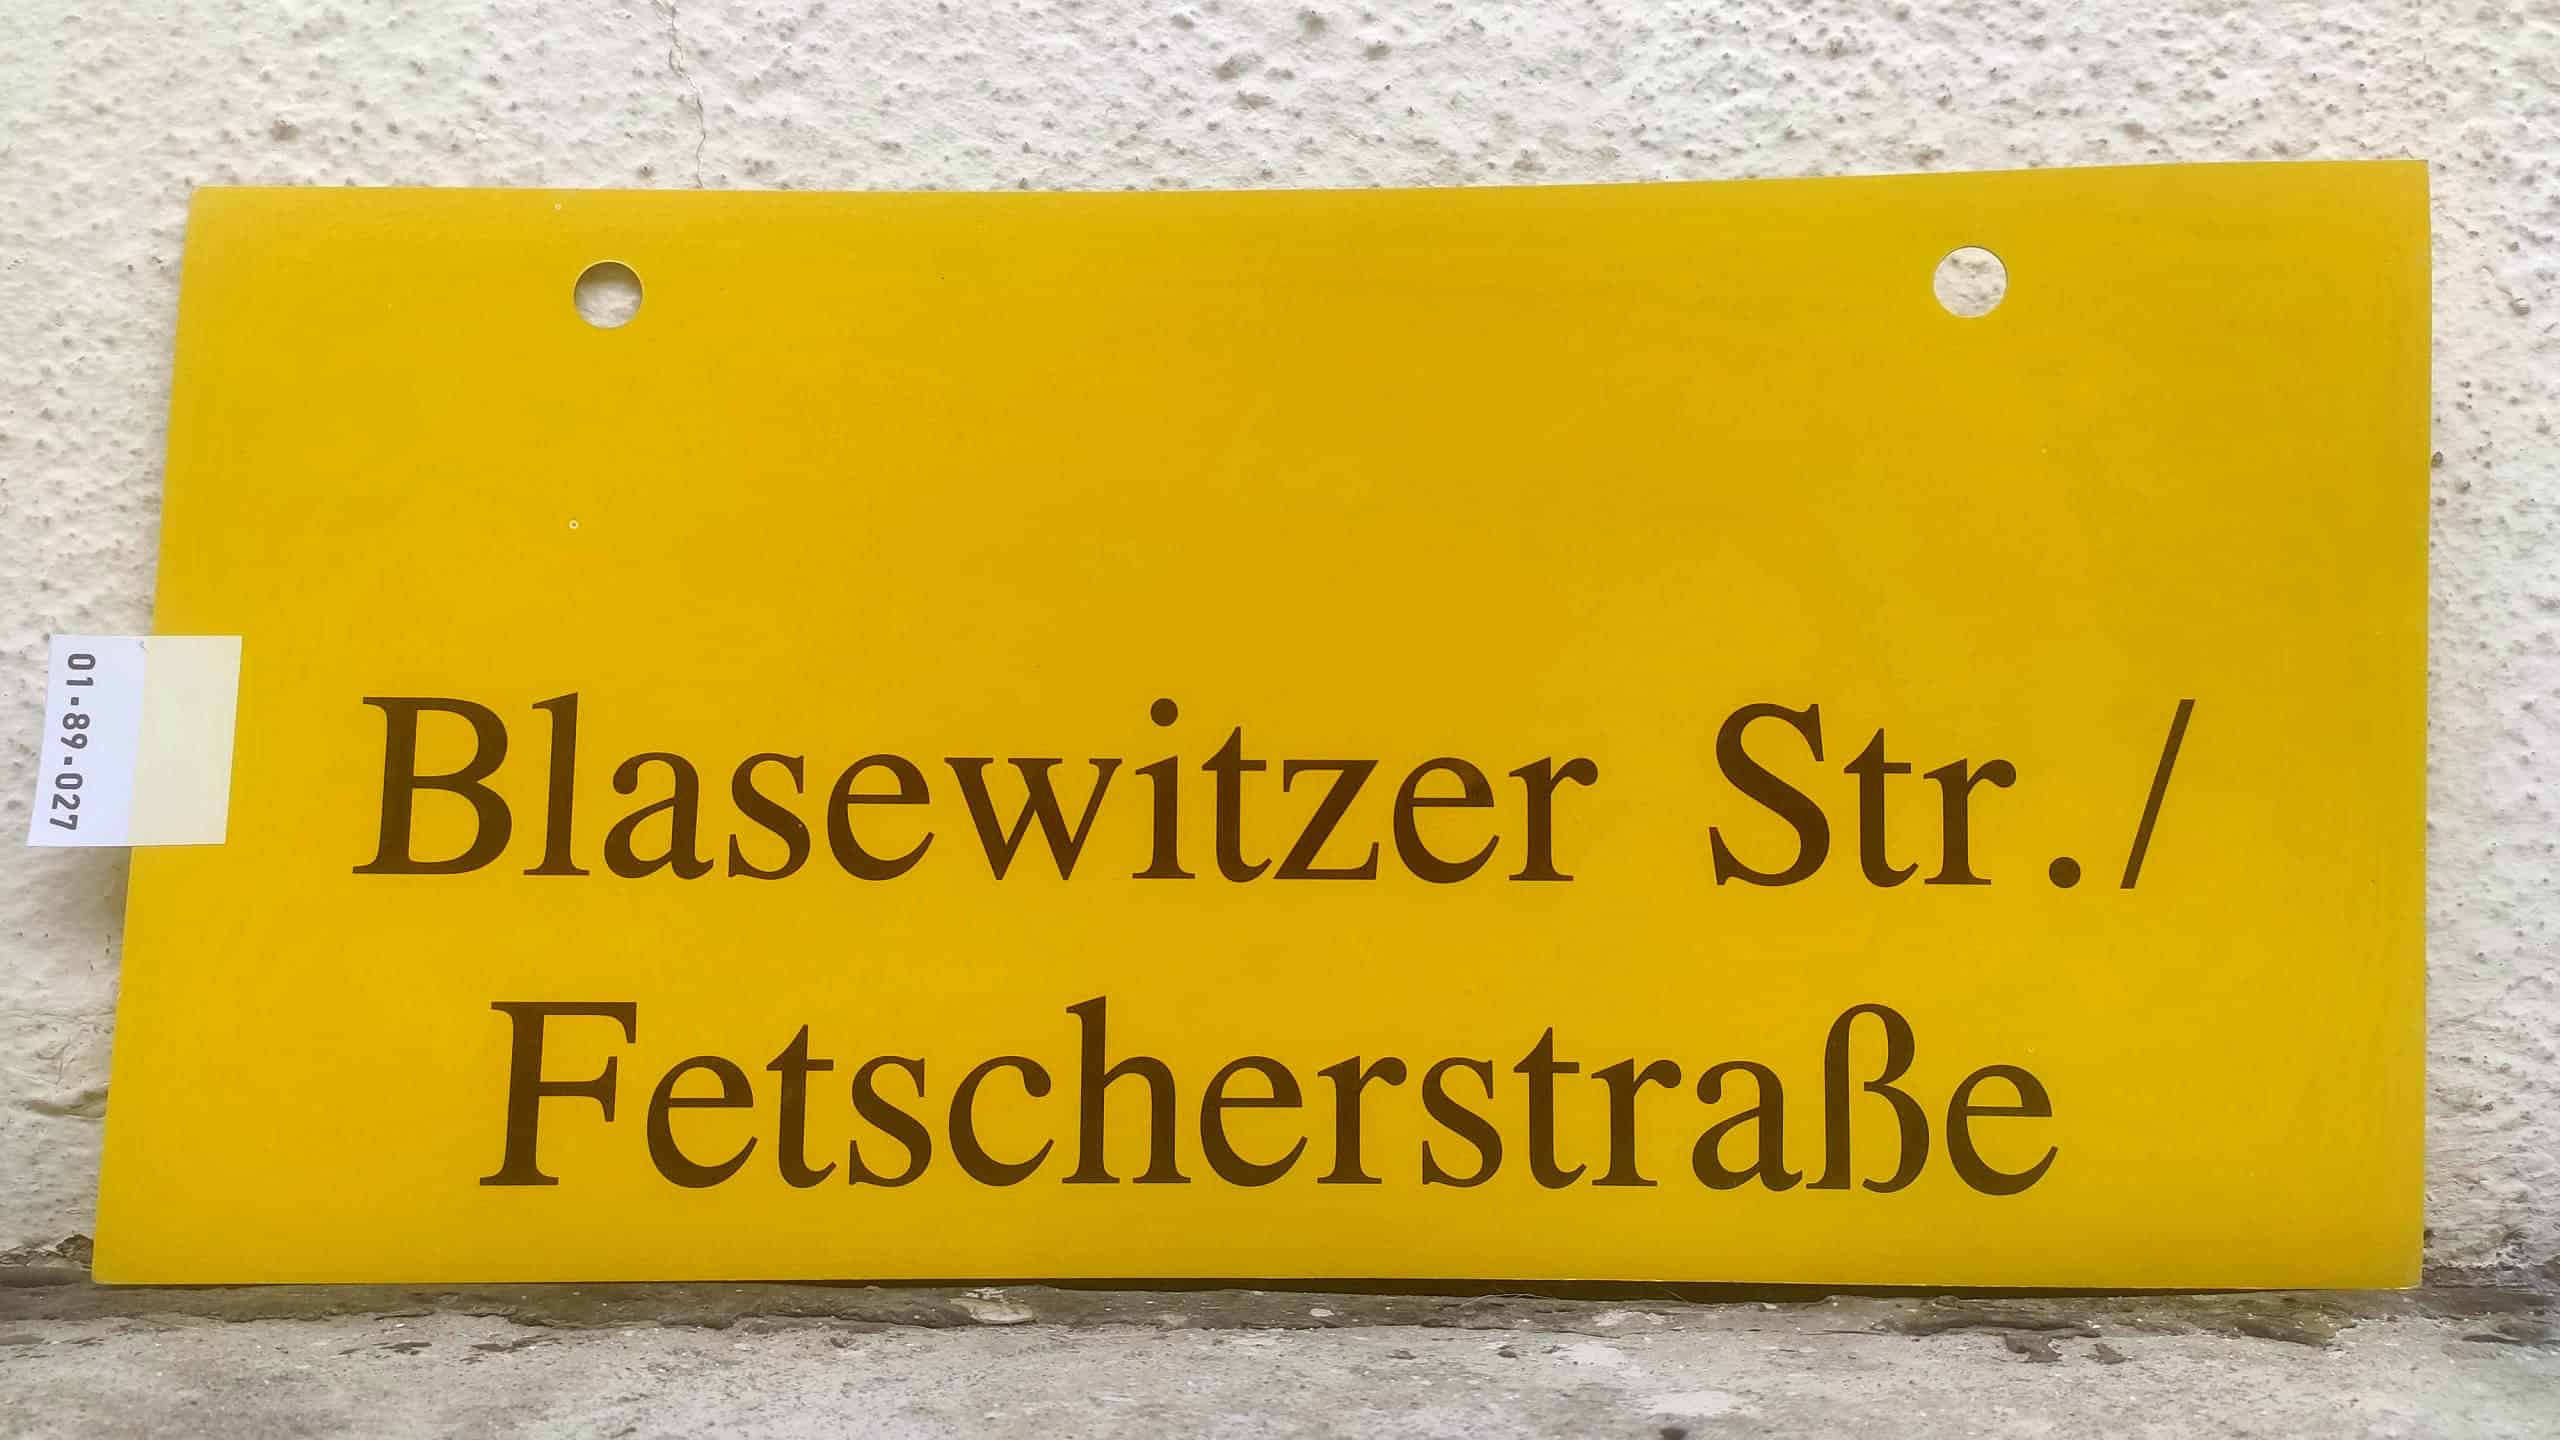 Blasewitzer Str./ Fetscherstraße